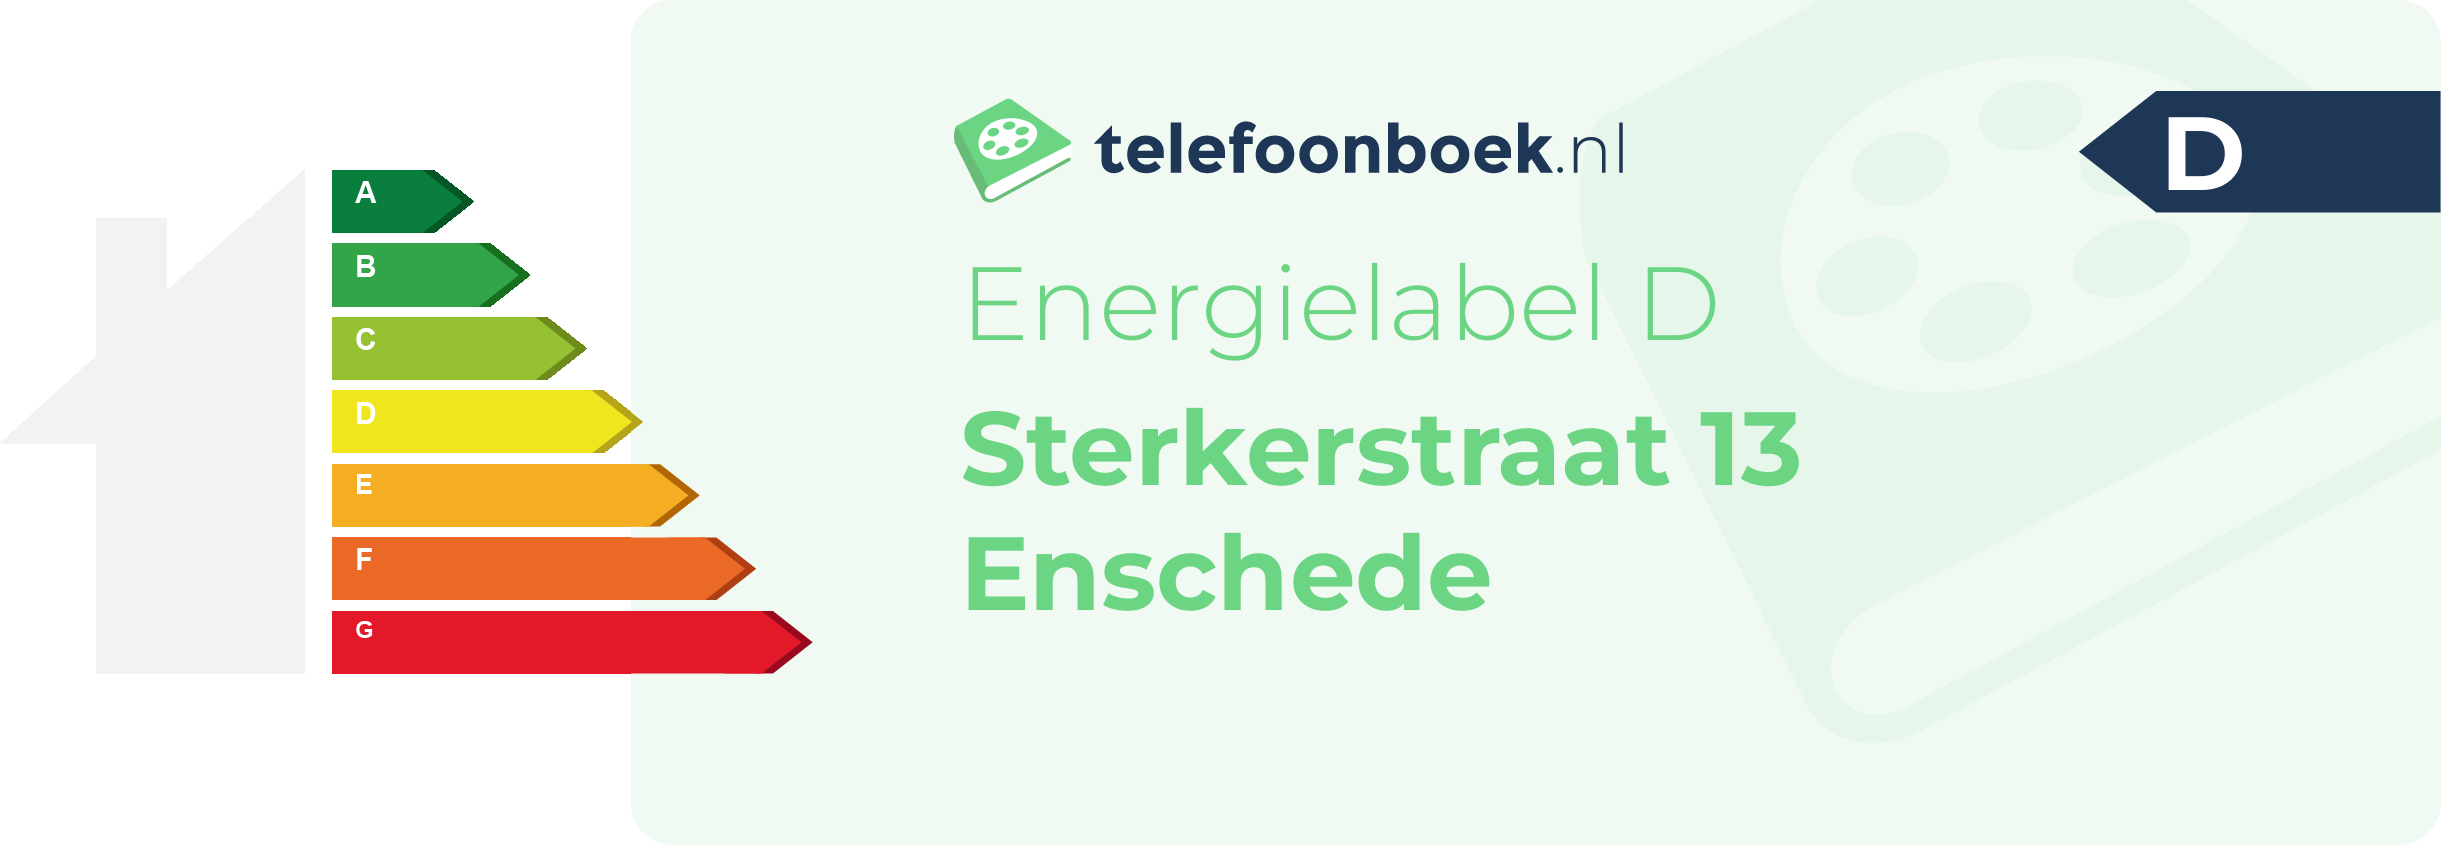 Energielabel Sterkerstraat 13 Enschede